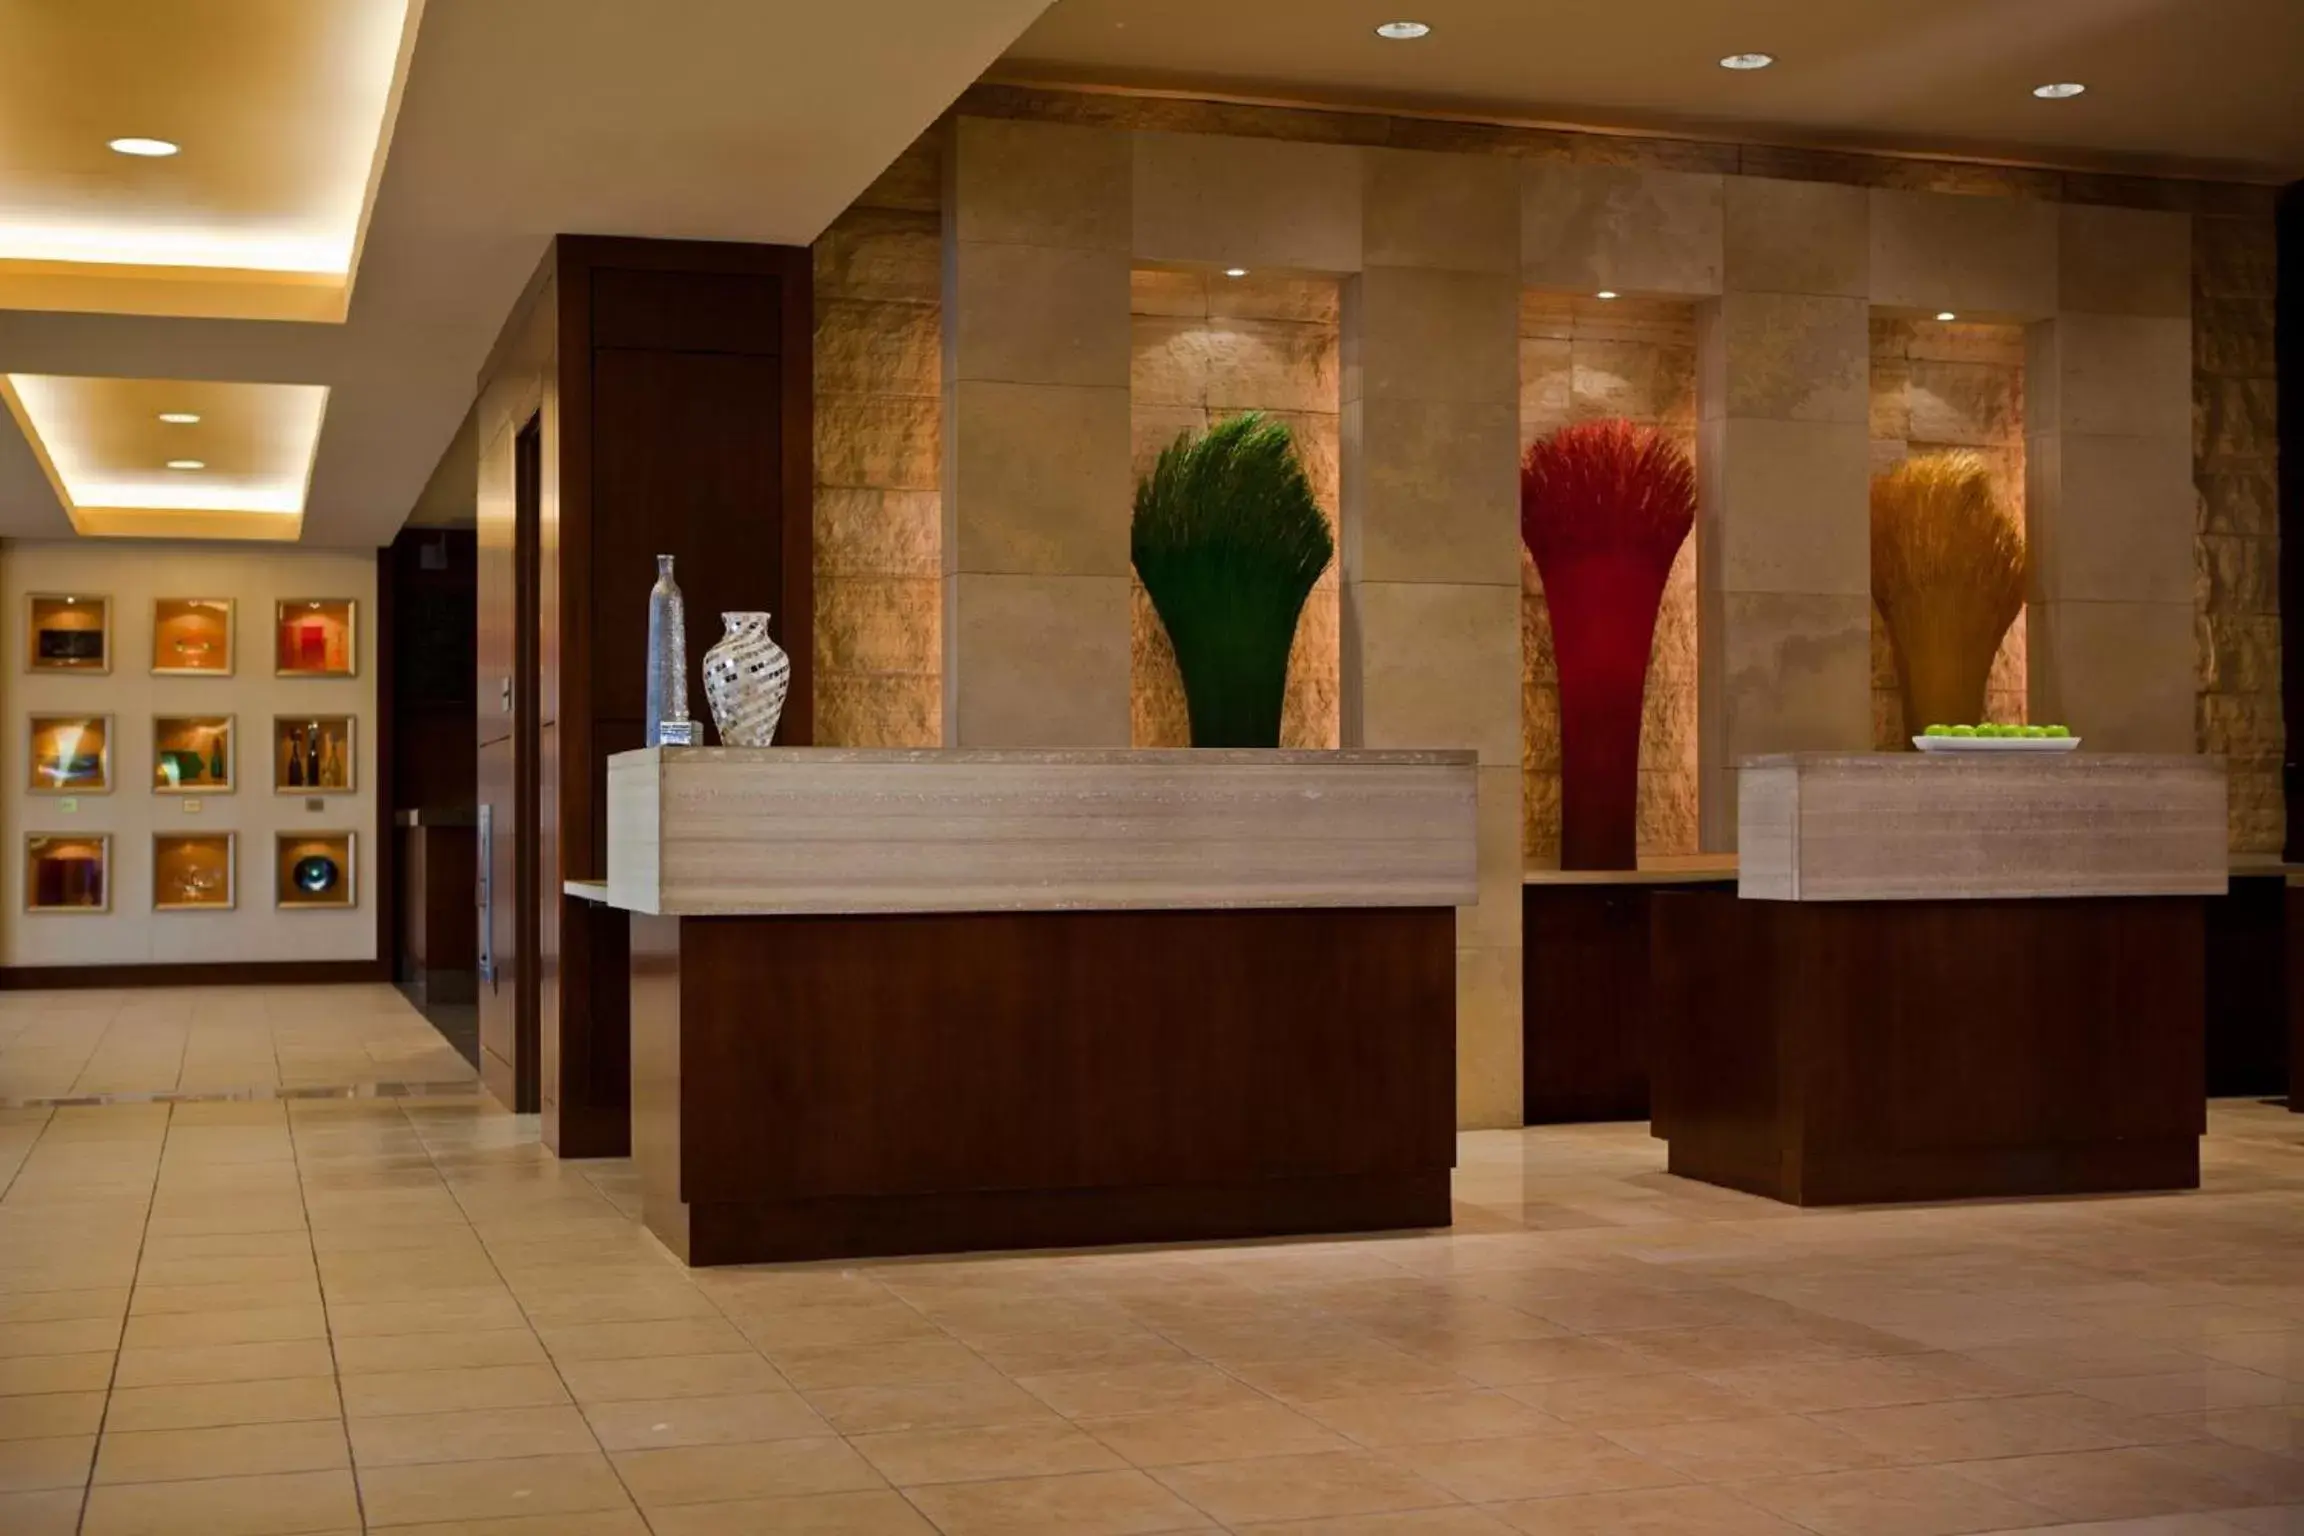 Lobby or reception, Lobby/Reception in Hyatt Regency Coralville